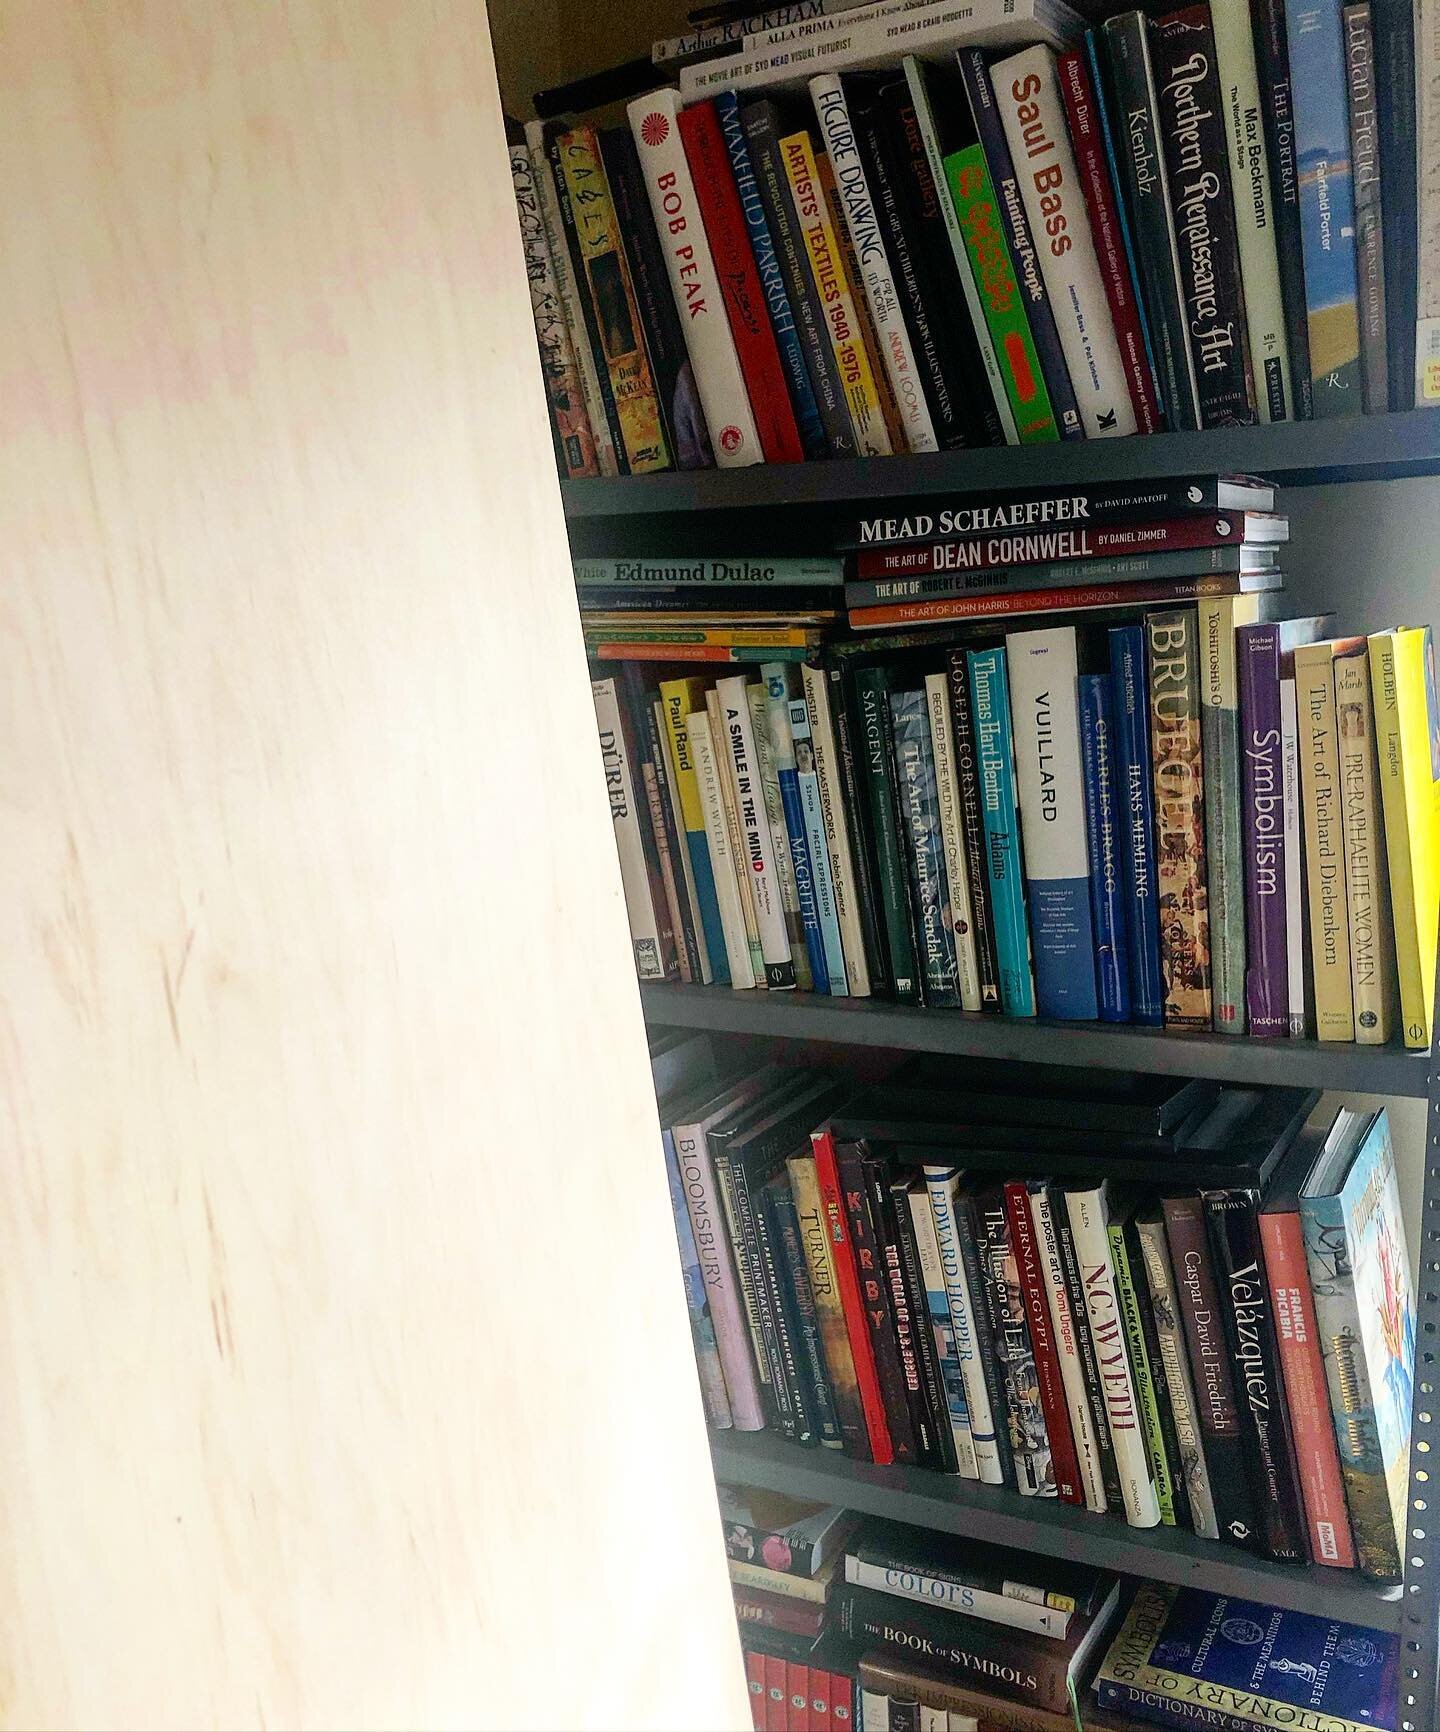 A little bit of everything.
#bookshelf